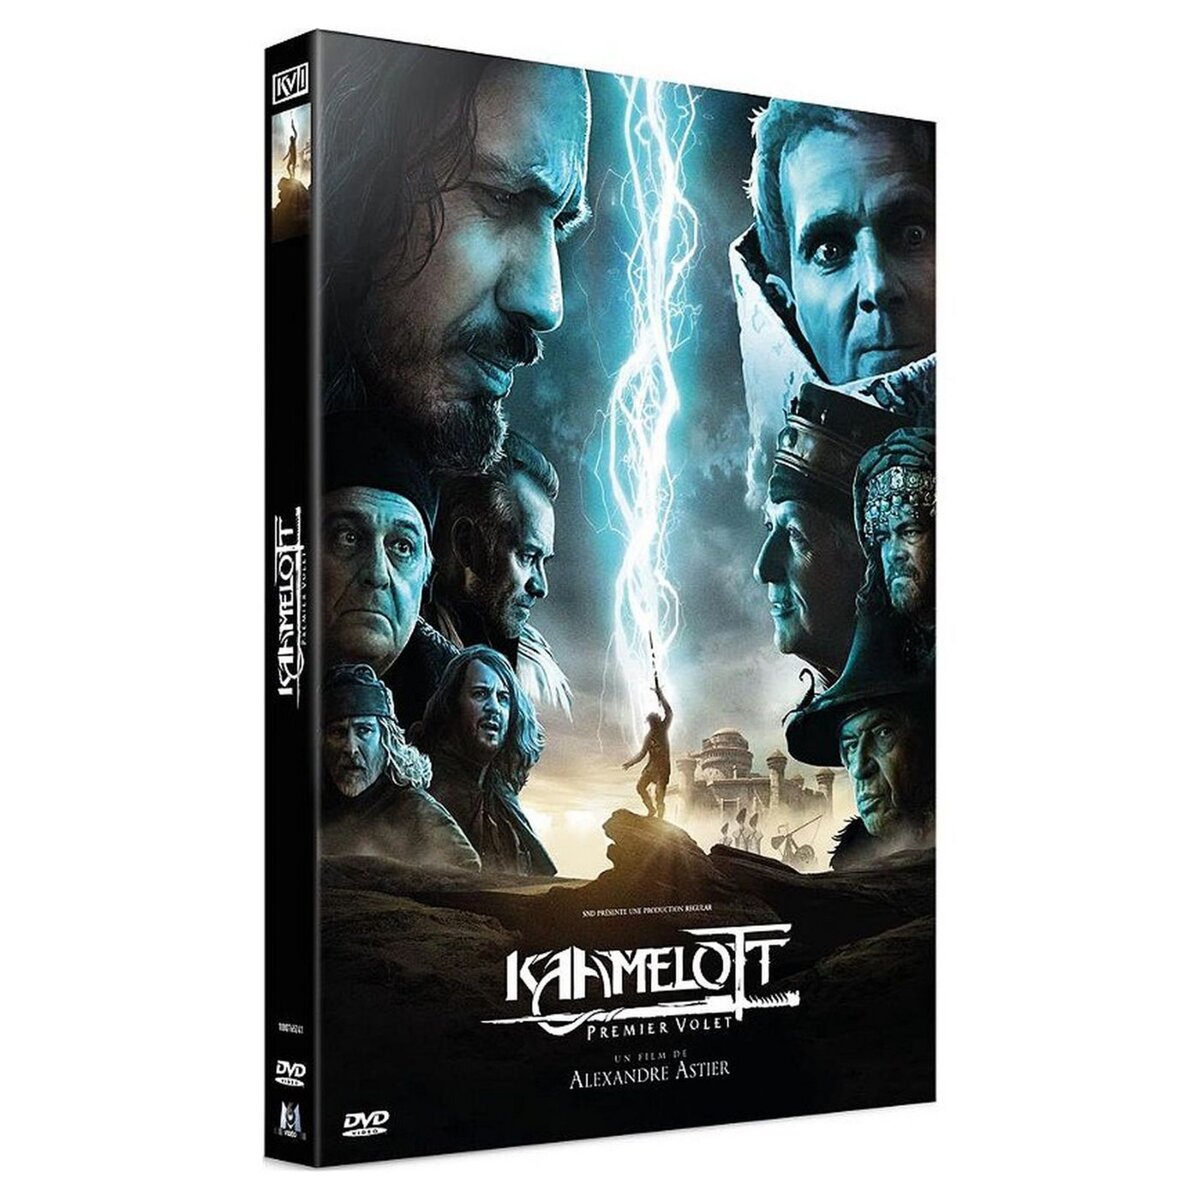 Kaamelott - Premier volet DVD